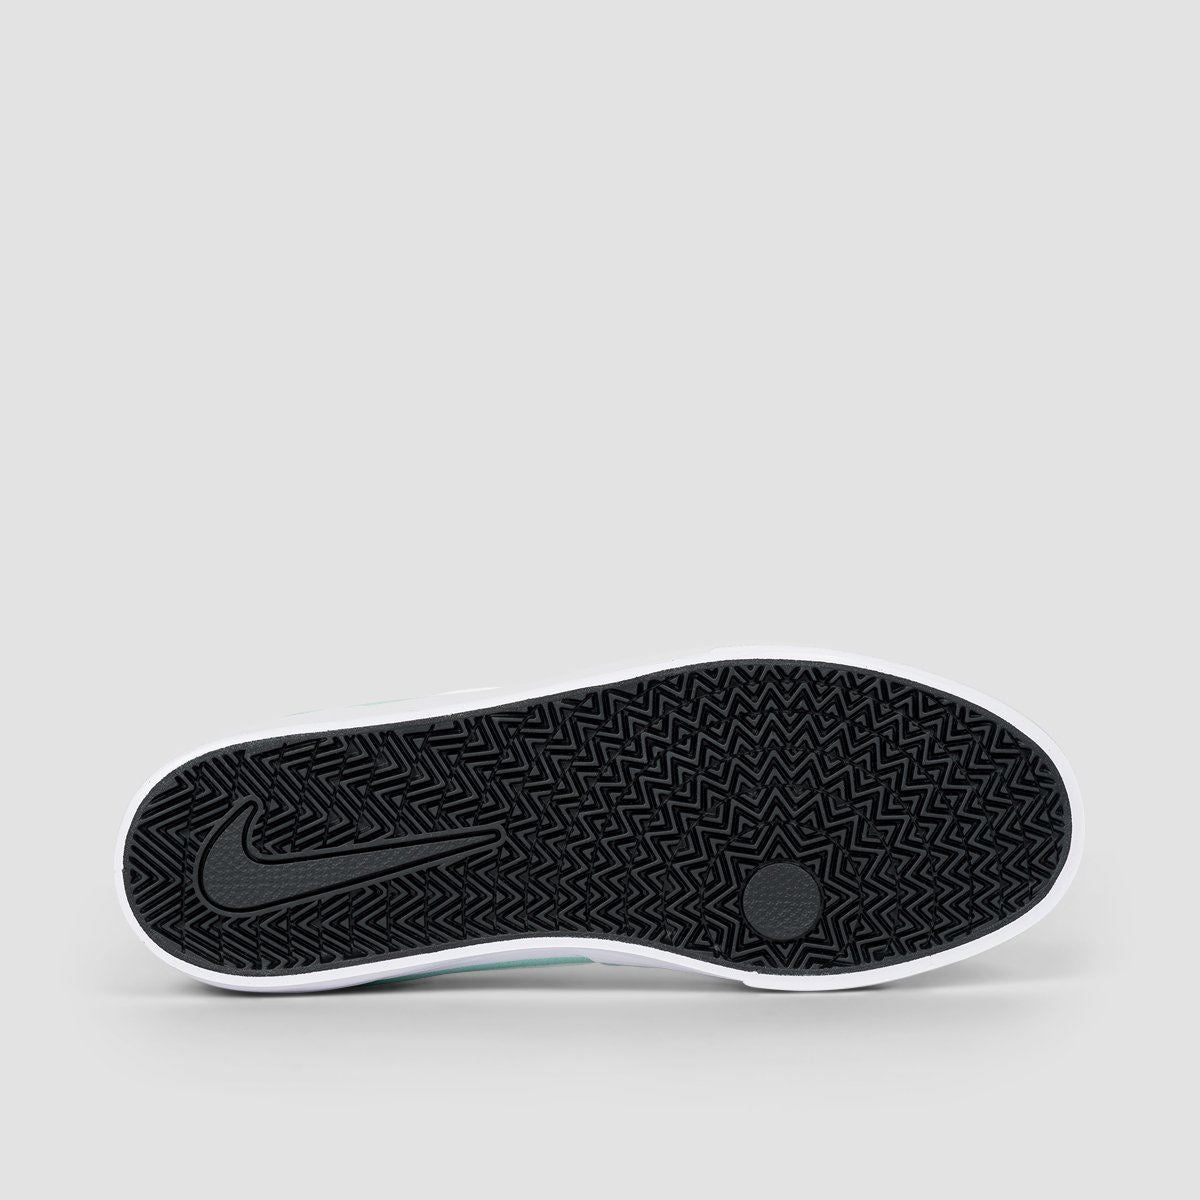 Nike SB Chron Solarsoft Shoes - Light Dew/White/Light Dew/White